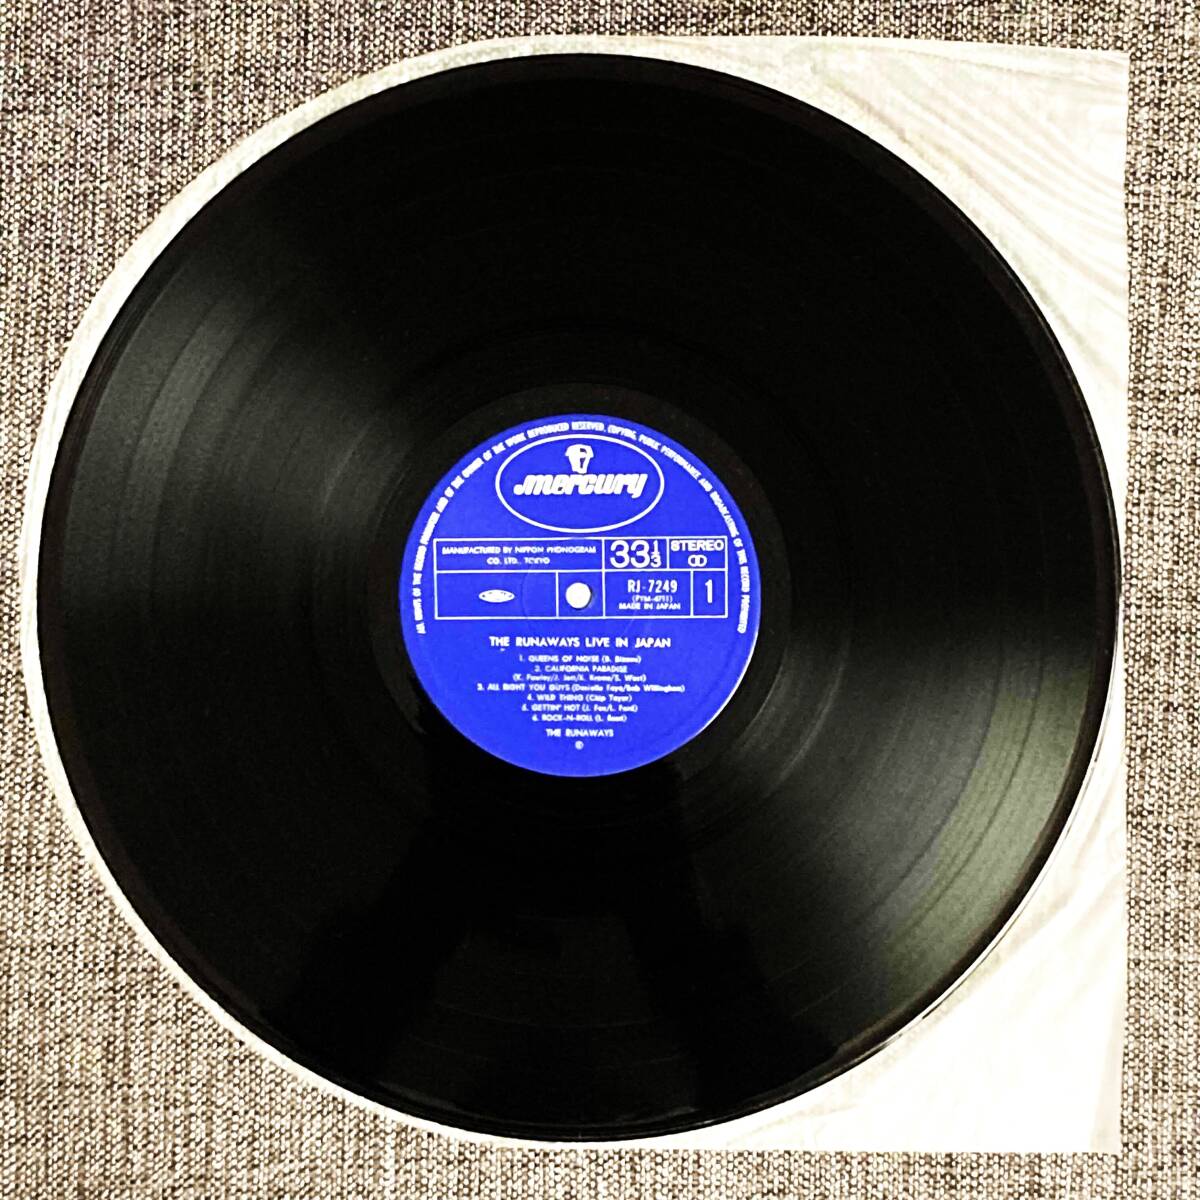 THE RUNAWAYS : LIVE IN JAPAN ザ・ランナウェイズ 国内盤 中古 アナログ LP レコード 盤 1977年 RJ-7249の画像3